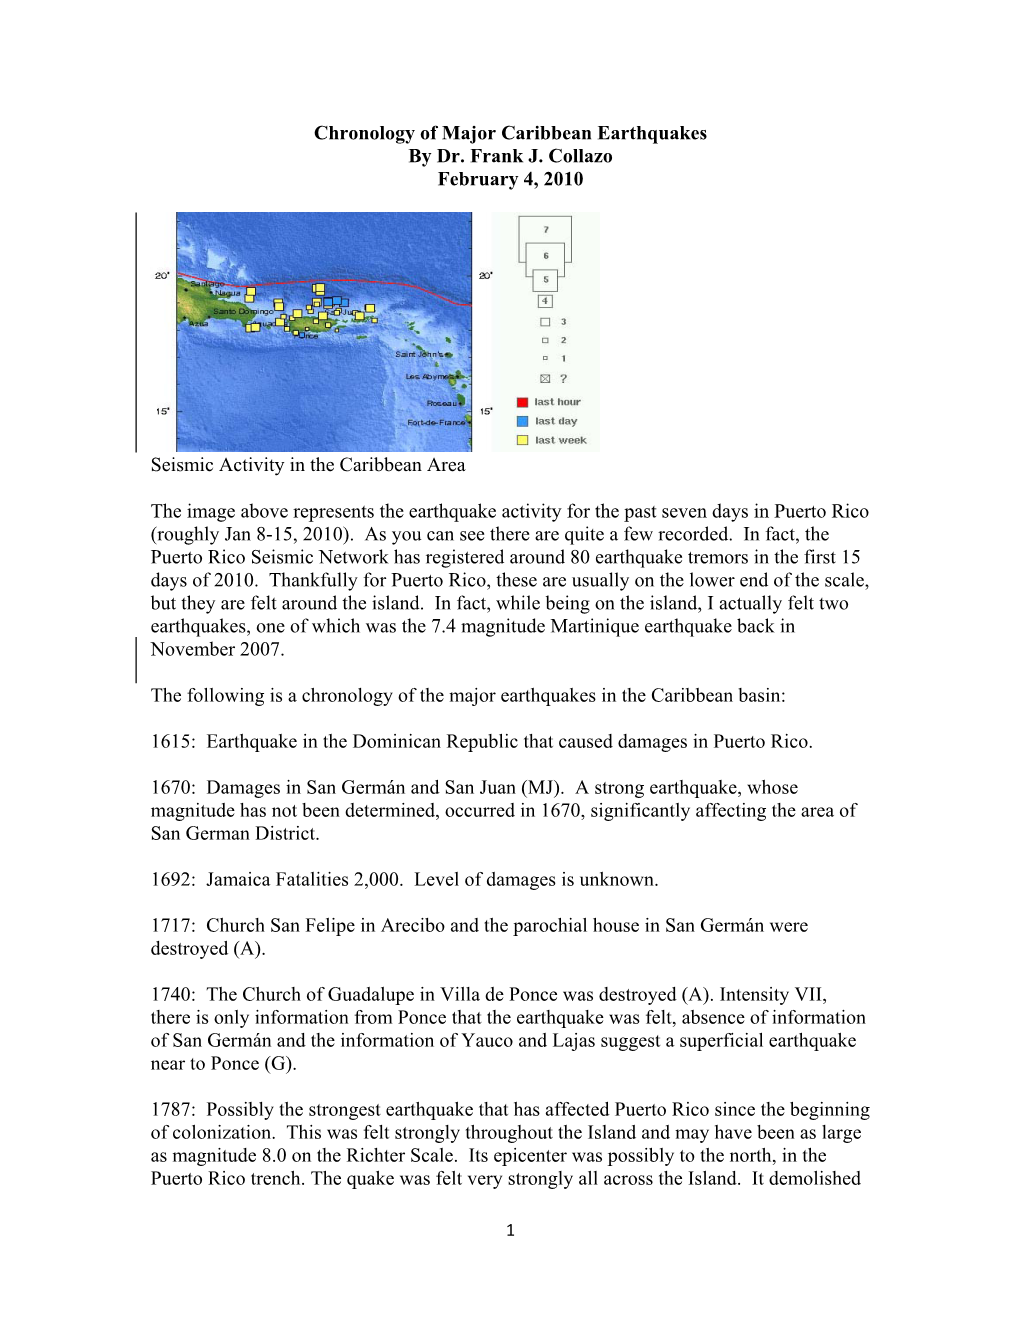 Chronology of Major Caribbean Earthquakes by Dr